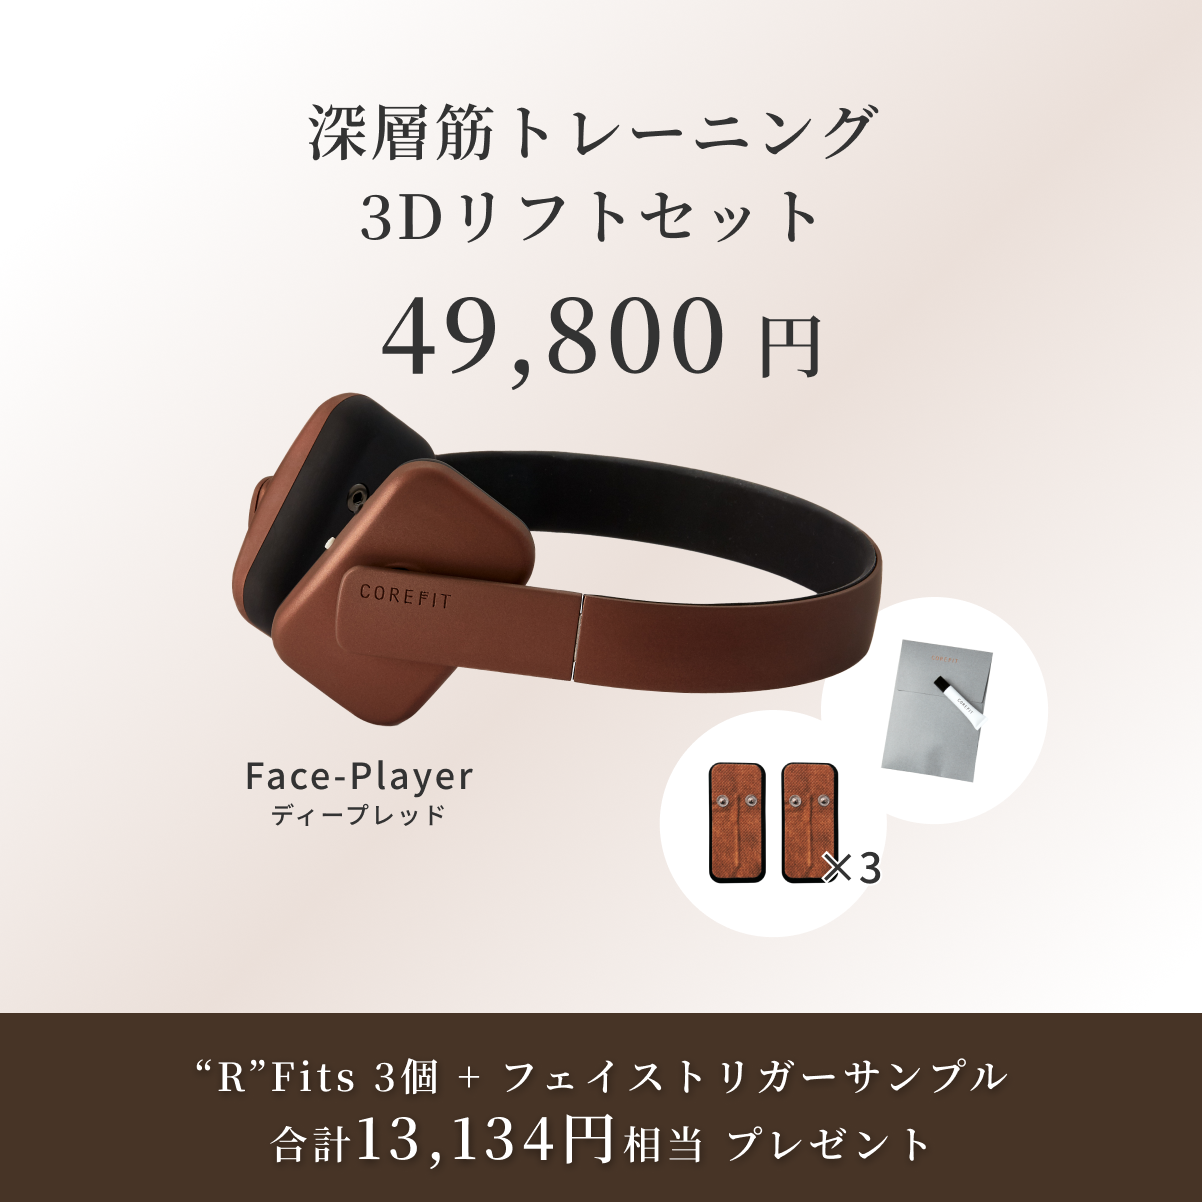 FACE-PLAYER フェイスプレイヤー - 【COREFIT公式オンラインストア